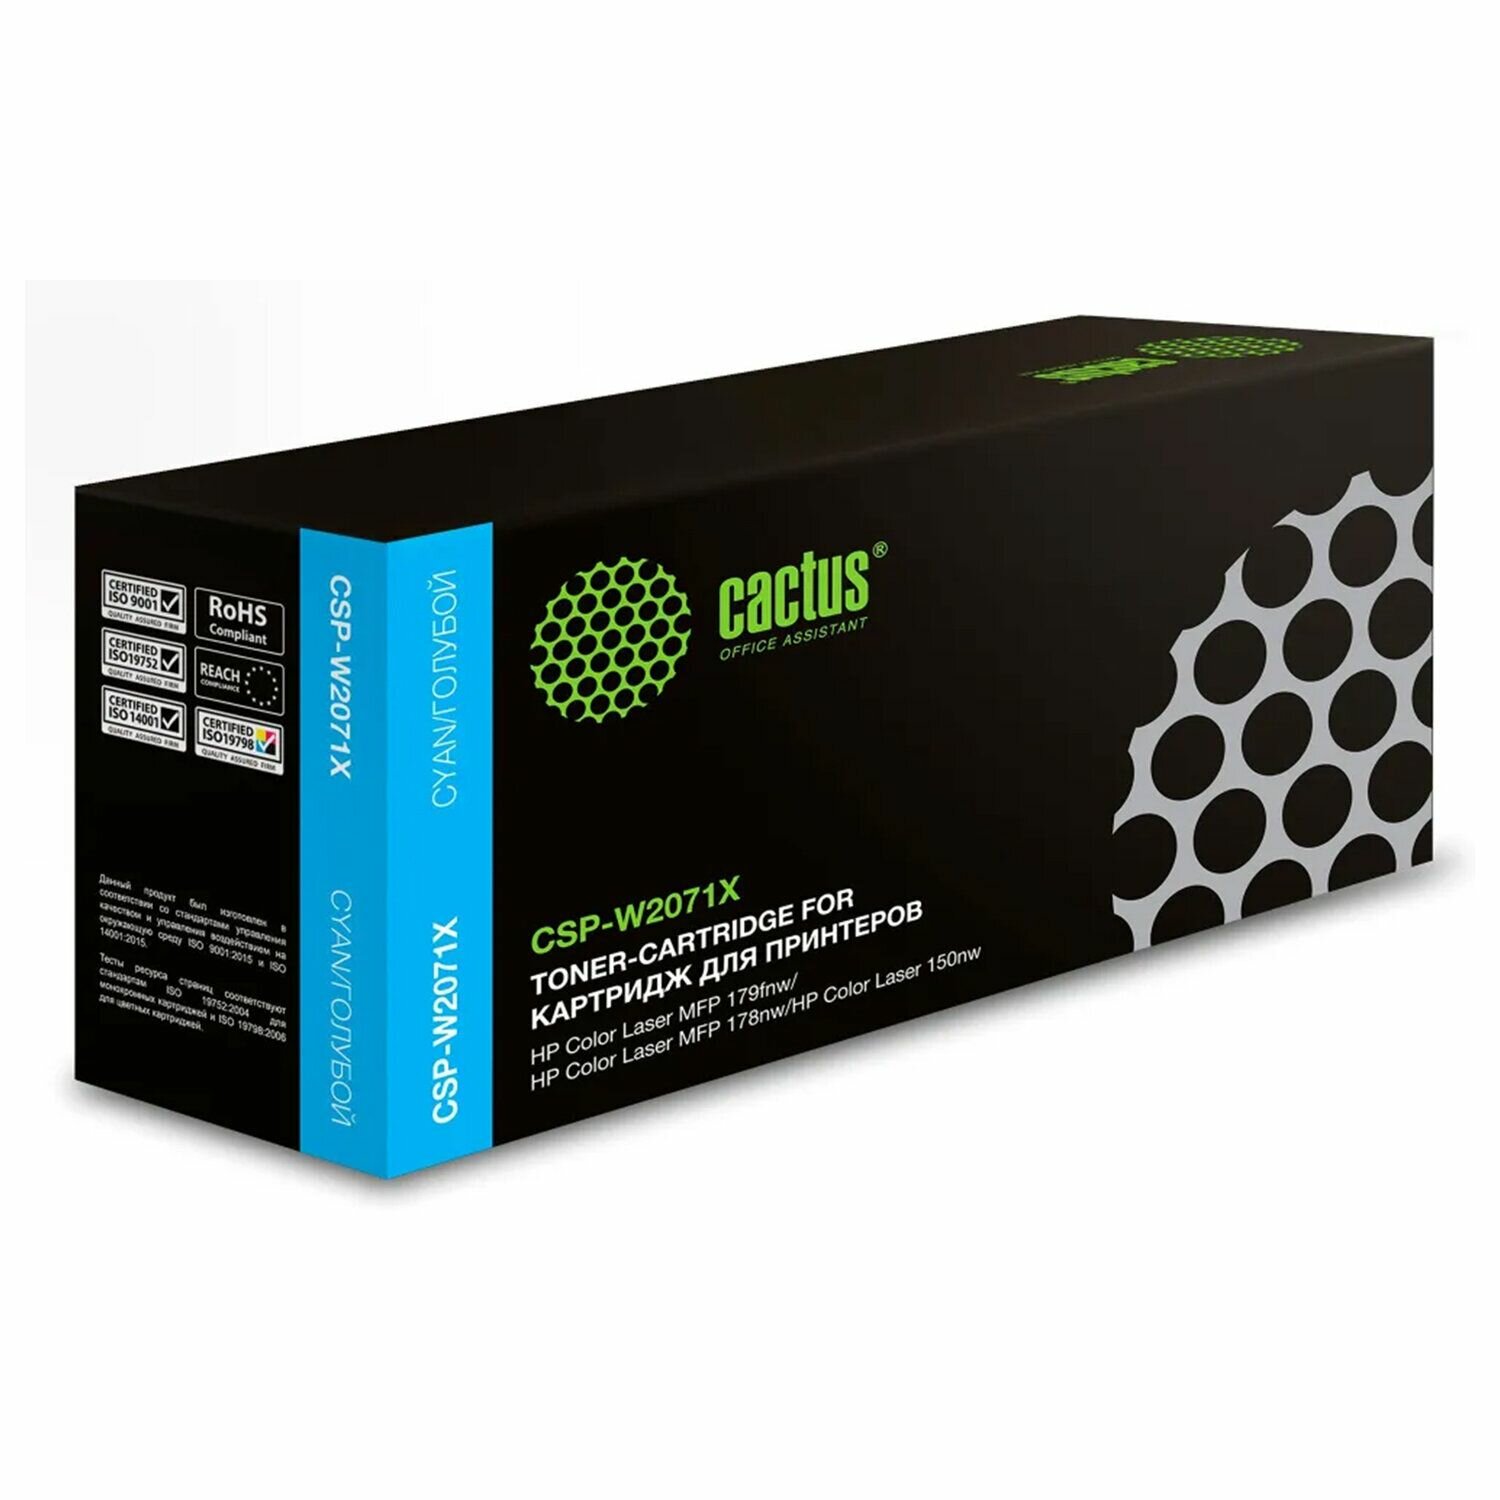 Картридж лазерный CACTUS CSP-W2071X, для HP Color Laser 150a/150nw/178nw, голубой, ресурс 1300 страниц